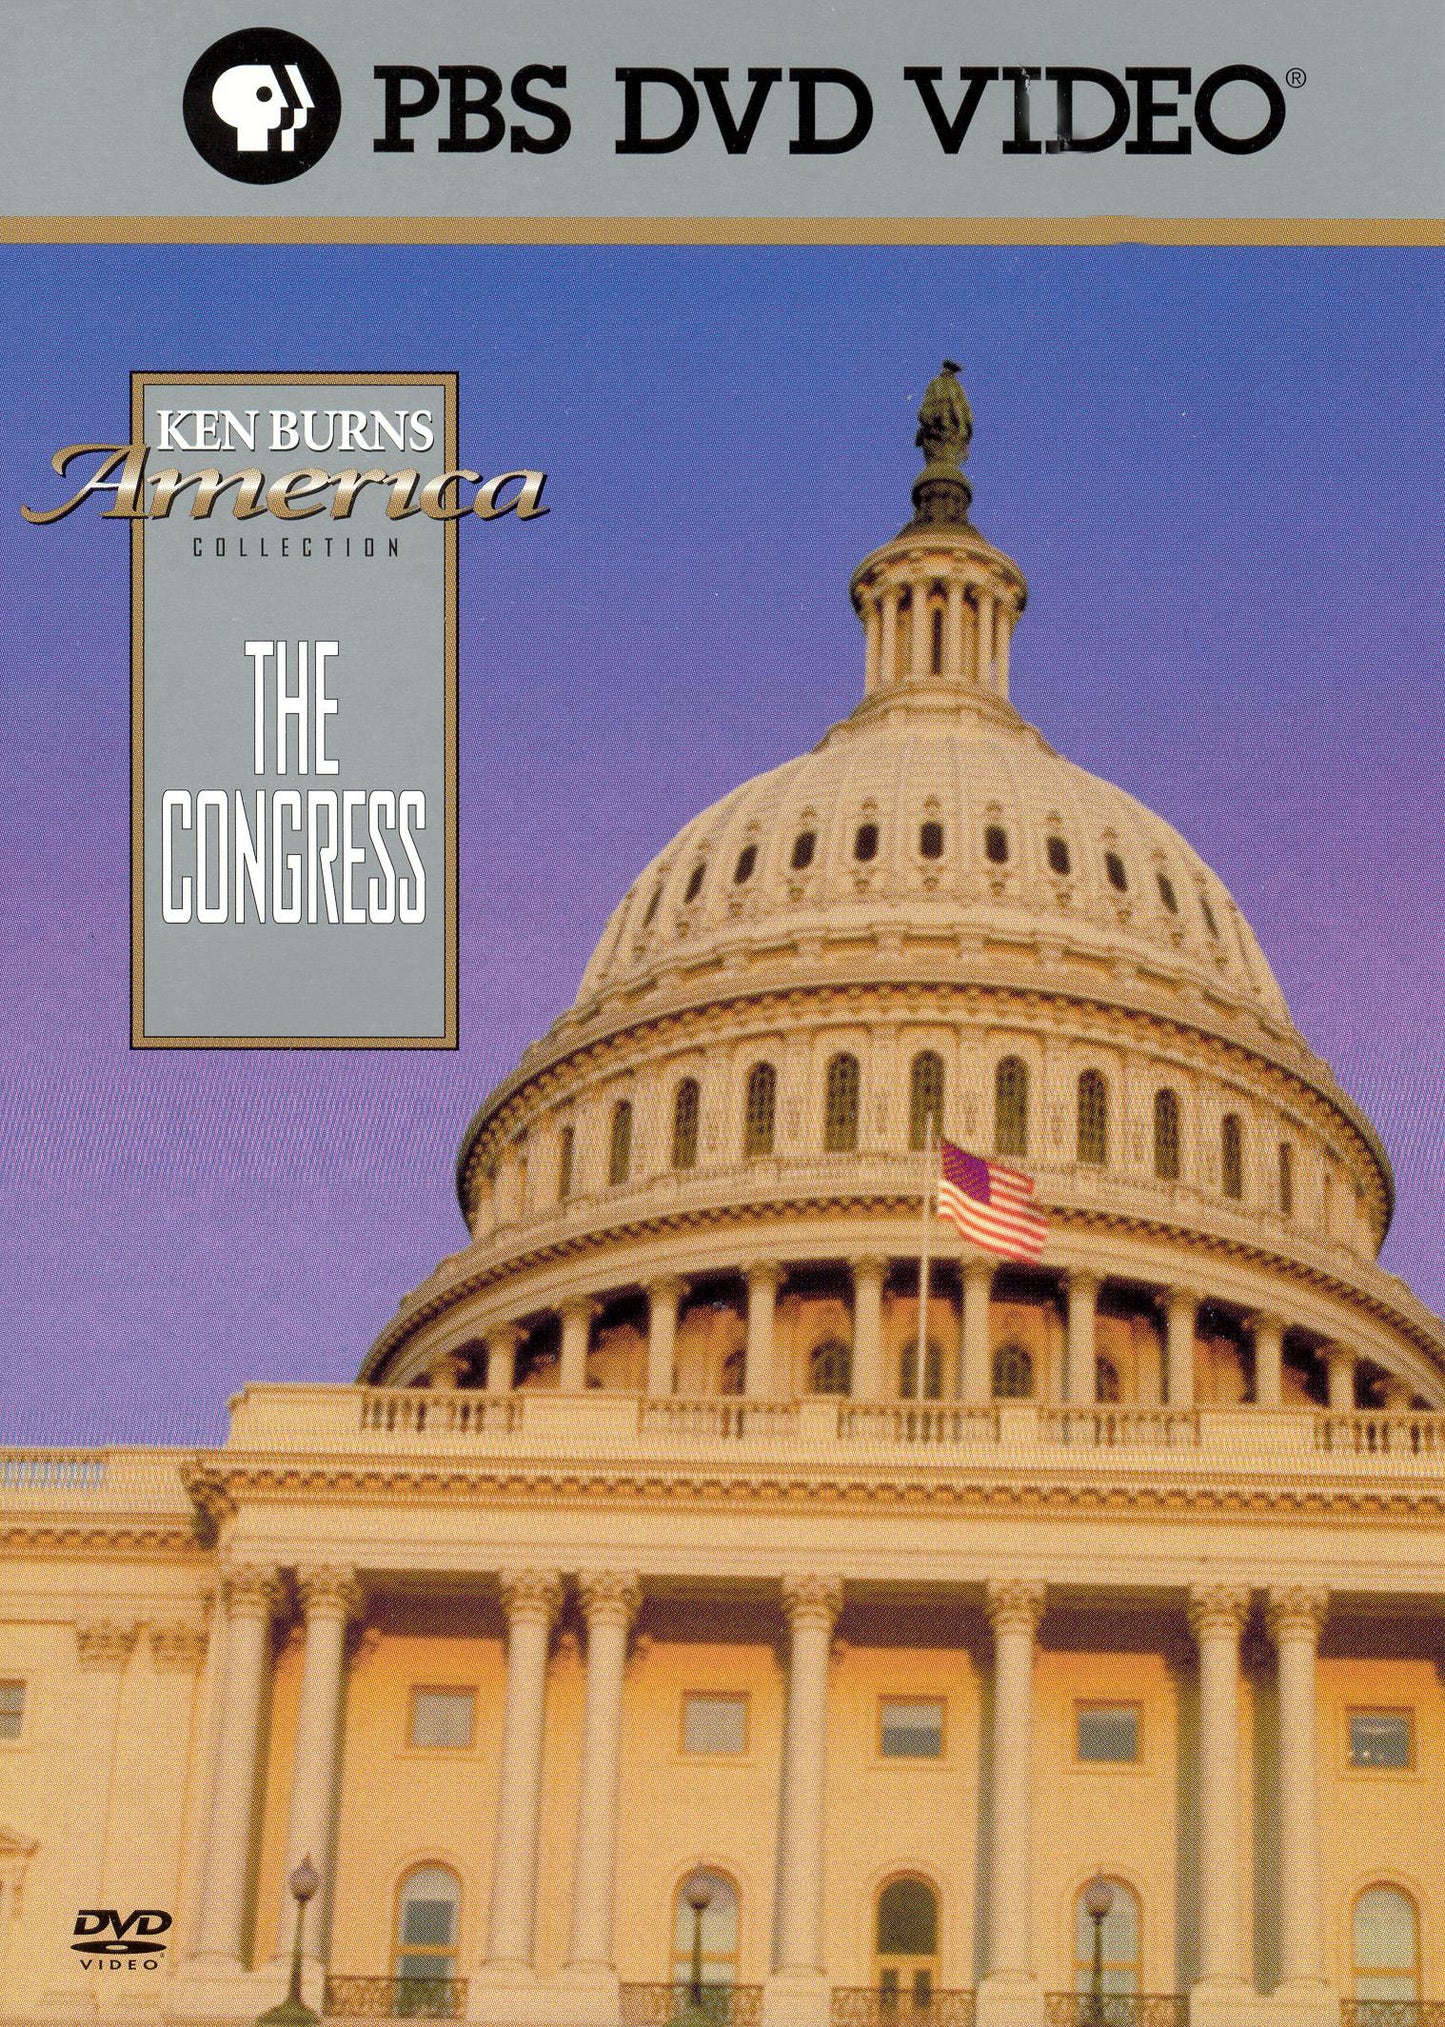 Ken Burns' America: The Congress cover art